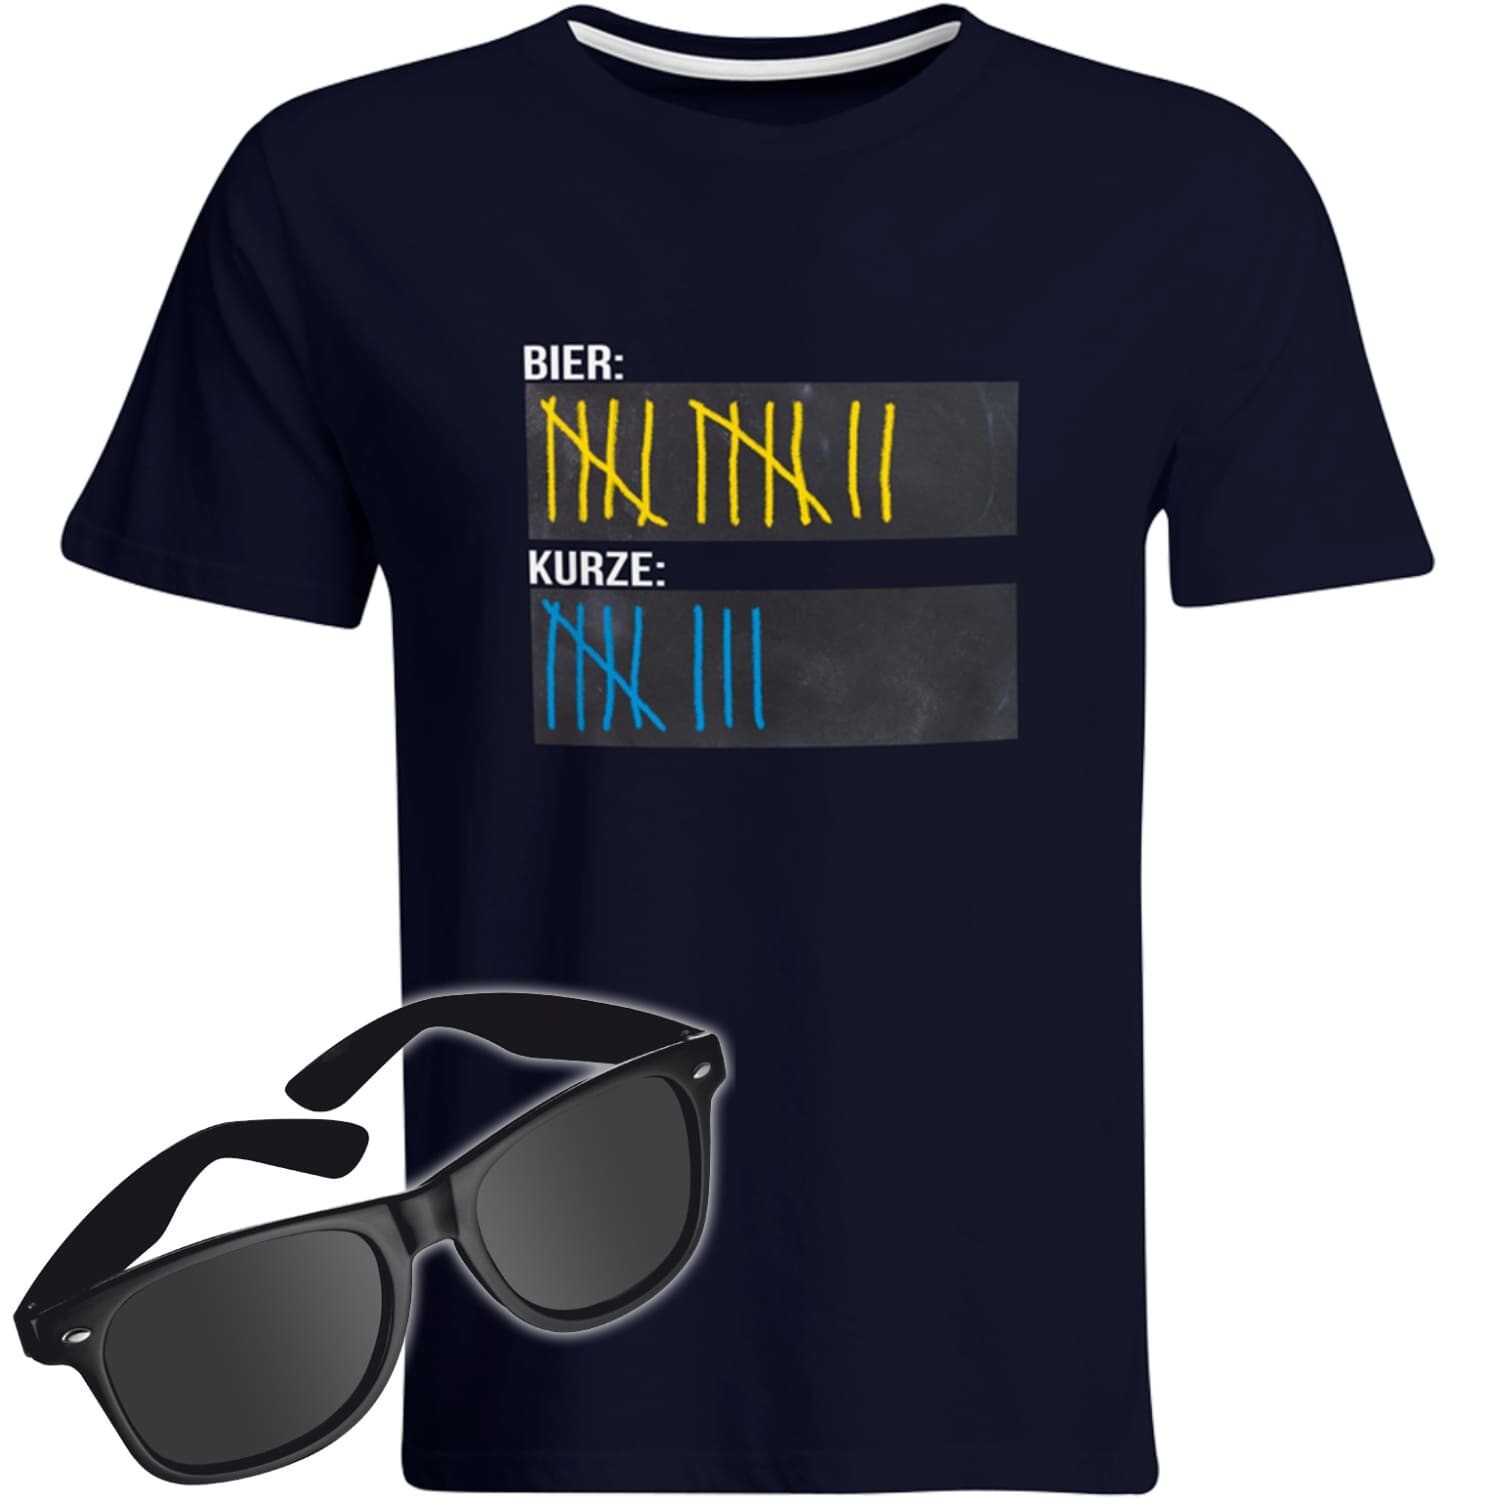 T-Shirt Strichliste Bier & Kurze mit Kreide beschreibbar inkl. Partybrille (Herren, Rundhals, Farbe Navy)